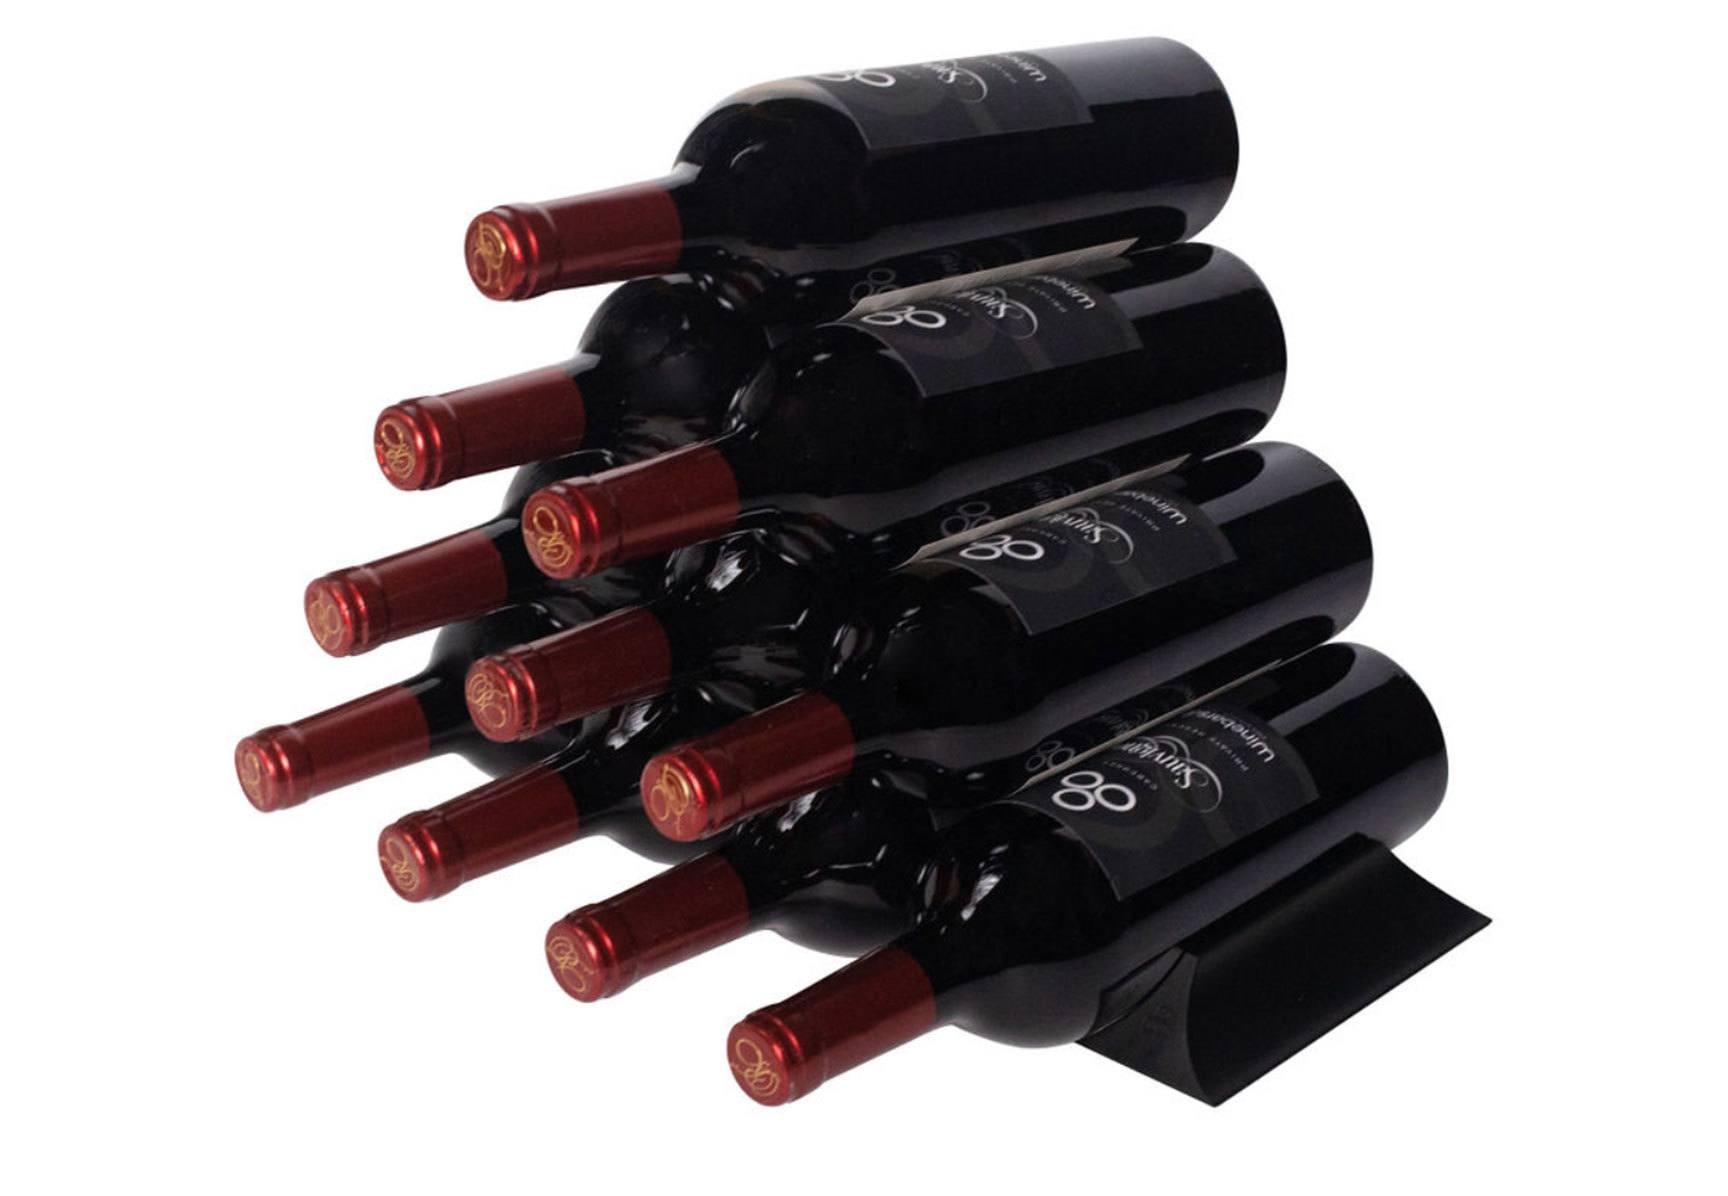 Winebars holding bottles